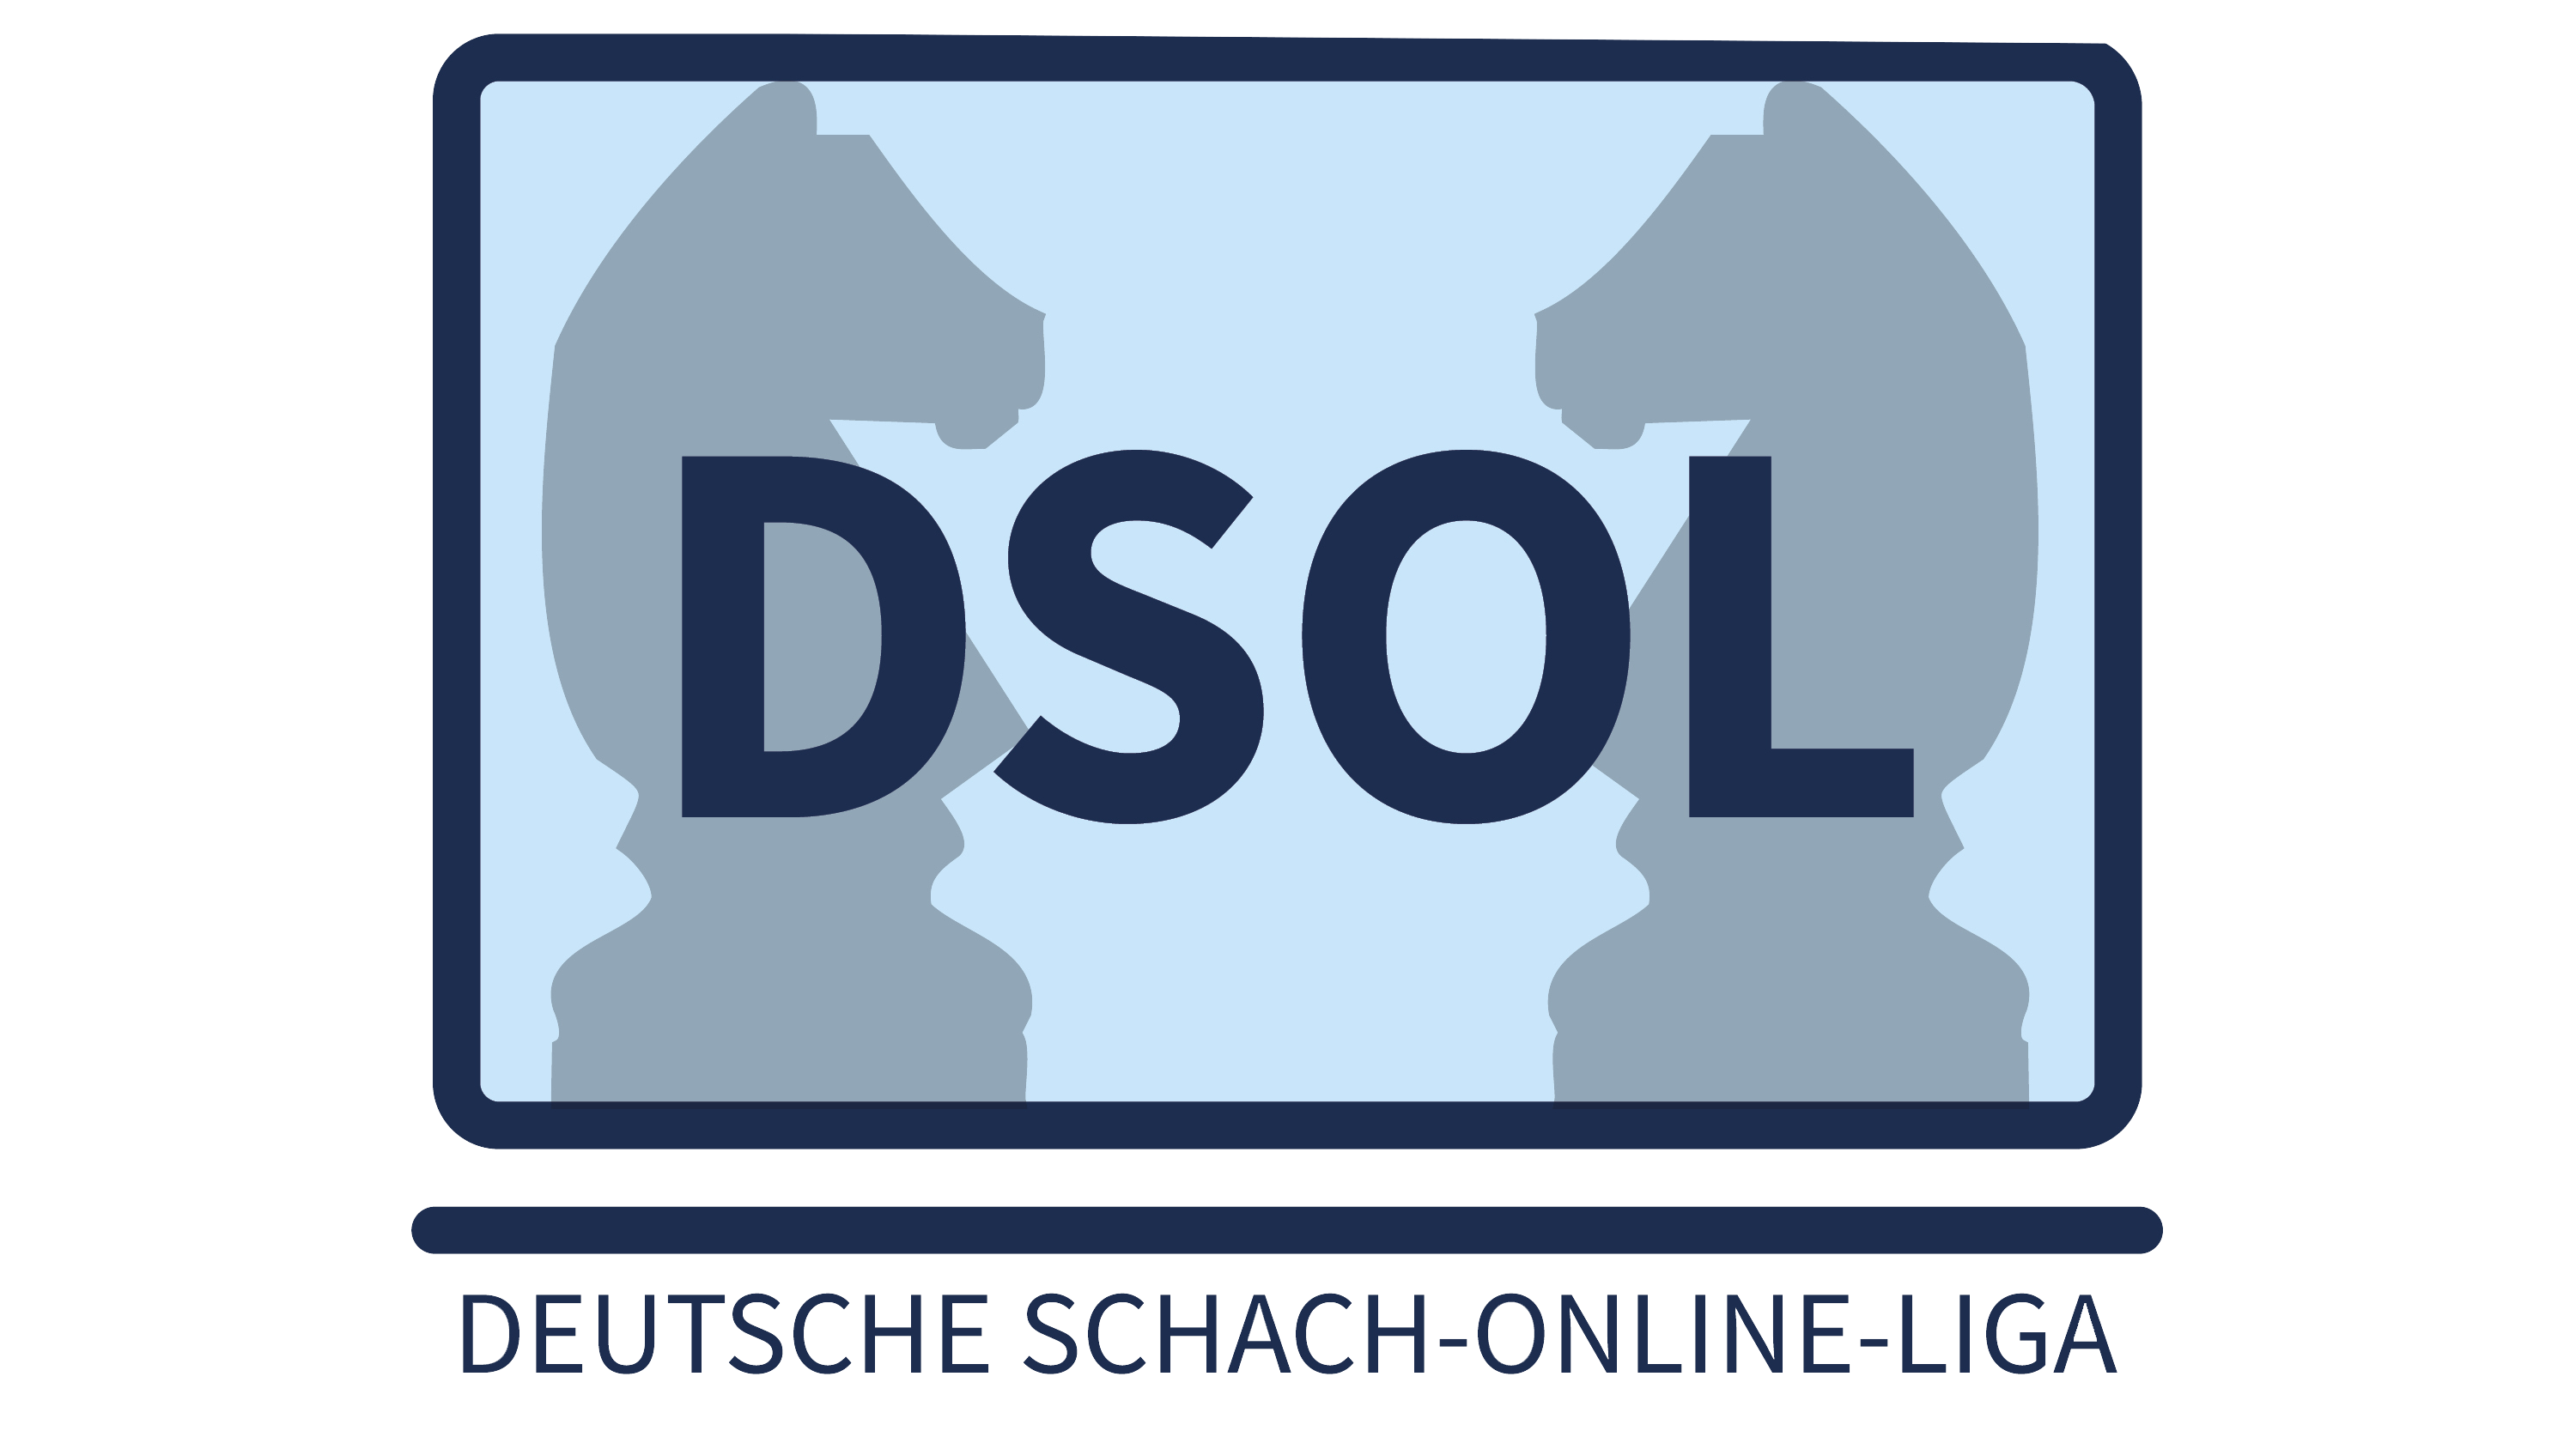 Deutsche Schach-Online-Liga Deizisau und Porz im Halbfinale - Deutscher Schachbund